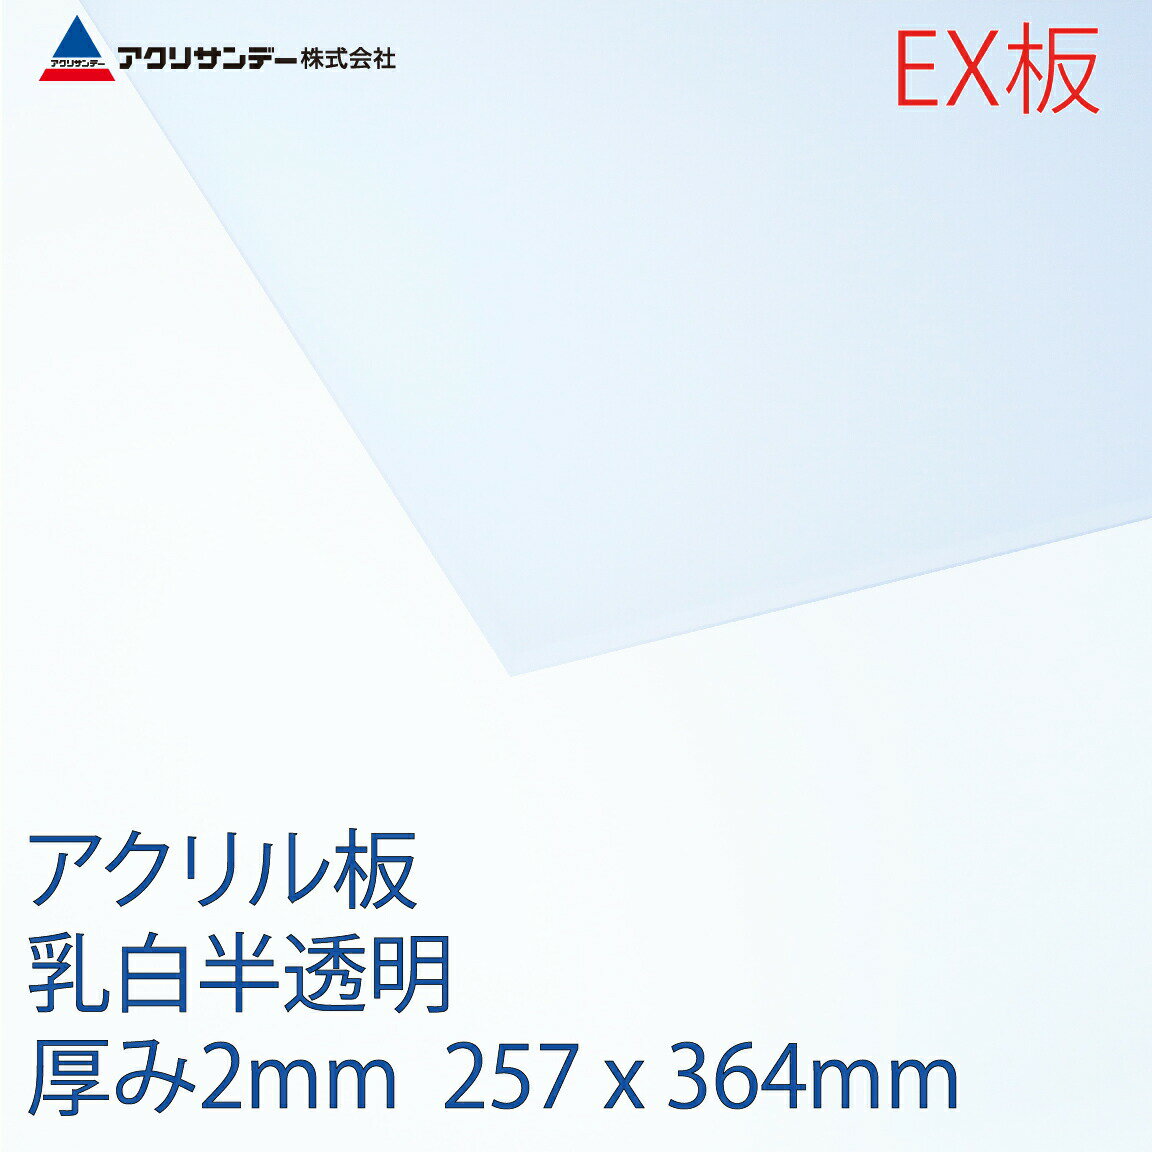 アクリサンデーEX板 アクリル 乳白(EX432) 半透明 厚み2mm B4サイズ 257×364mm 押出グレード 連続キャスト製法 プラスチック 色板 DIY